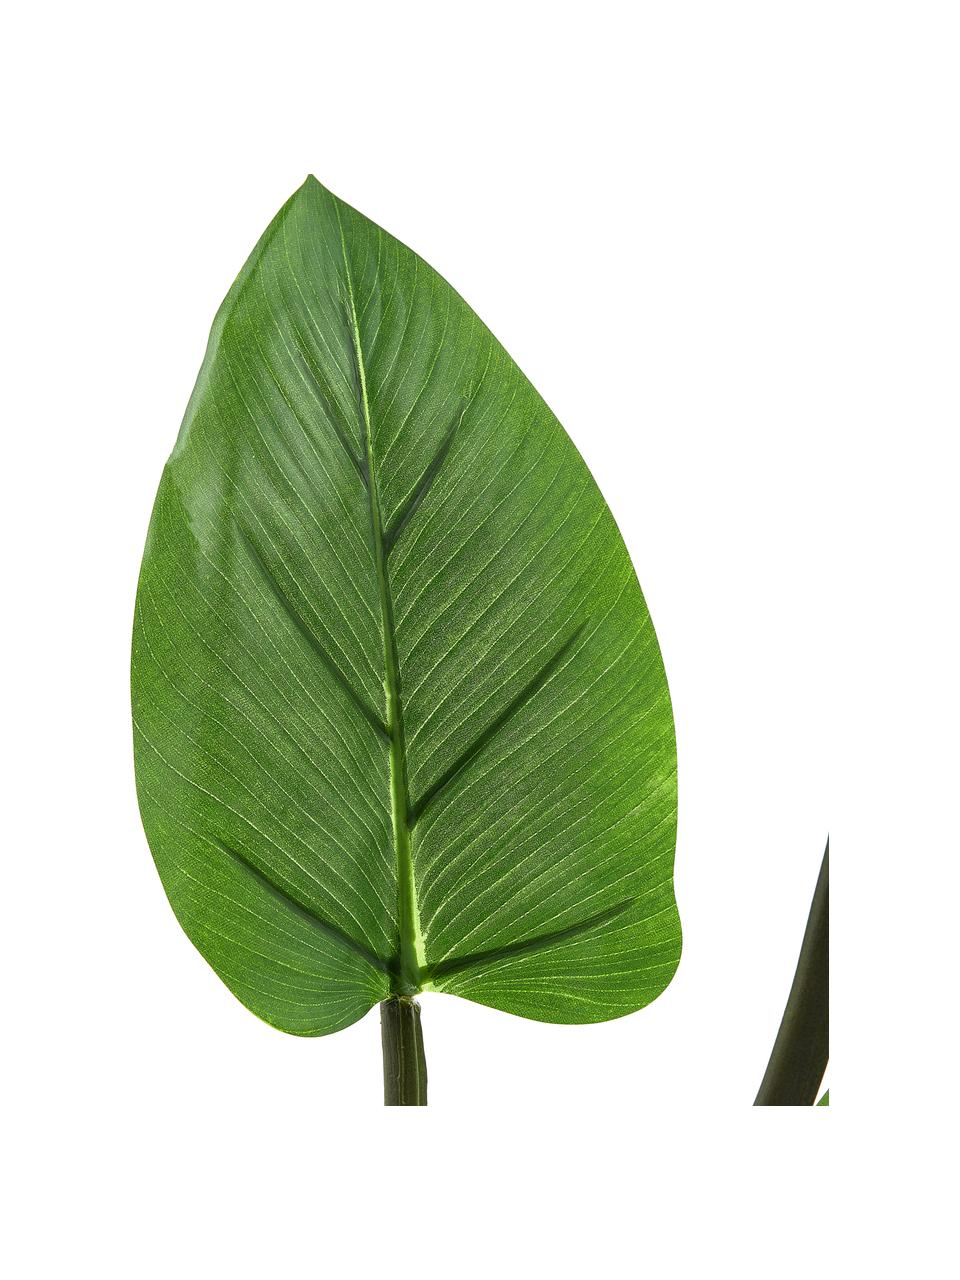 Plante artificielle en pot Alocasia, Plastique, Vert, haut. 91 cm